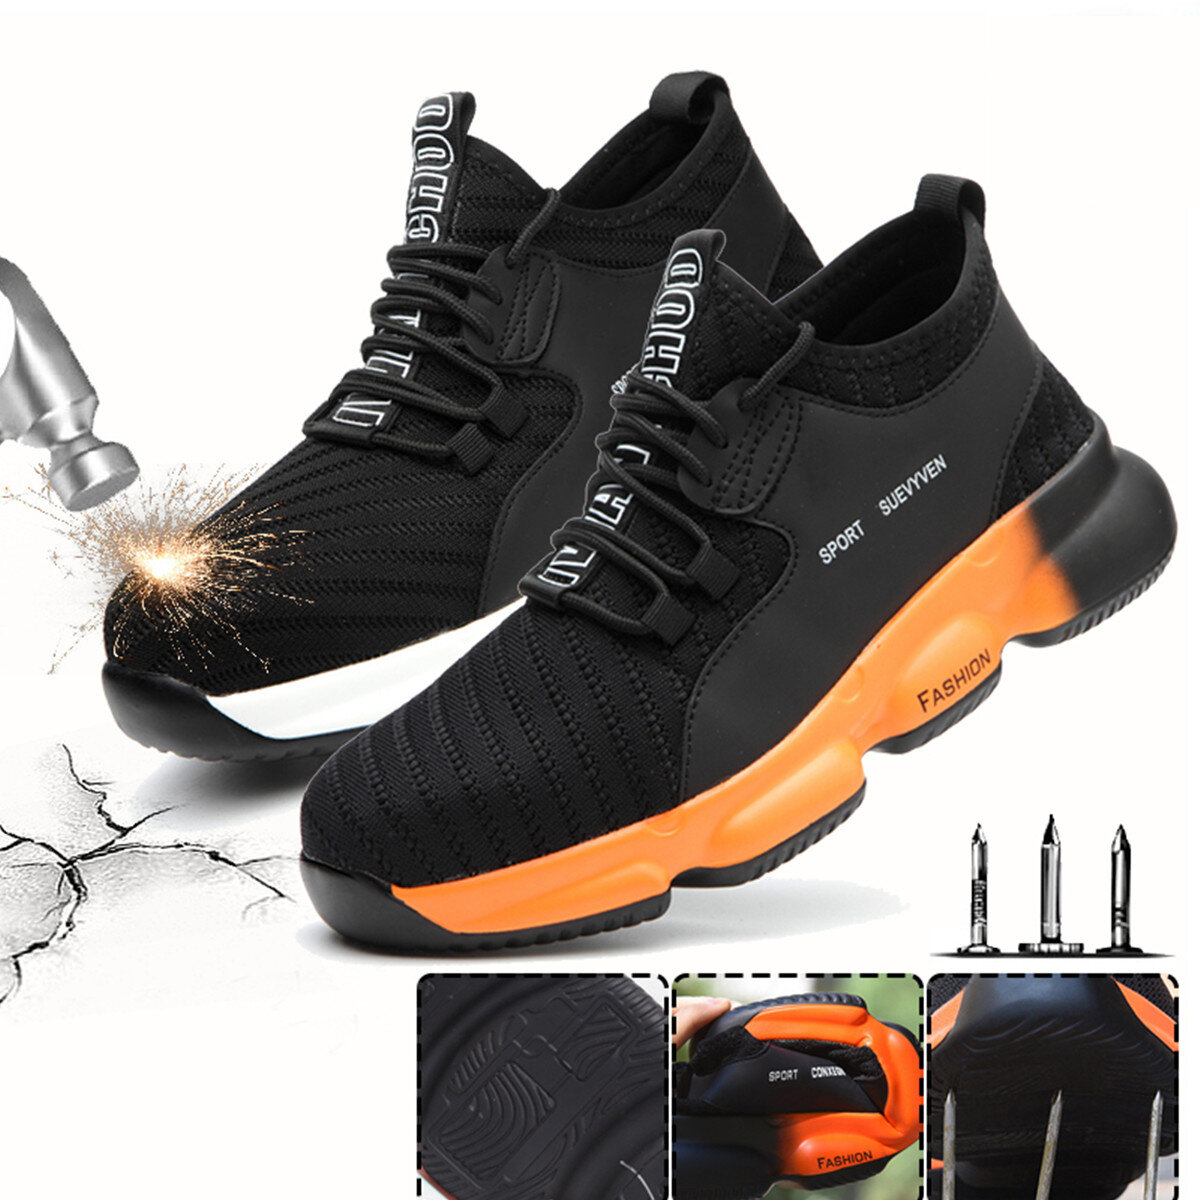 Sapatos de segurança unissexo para trabalho, tecelagem voadora, biqueira de aço, tênis, corrida, camping, escalada, caminhada, tênis, corrida